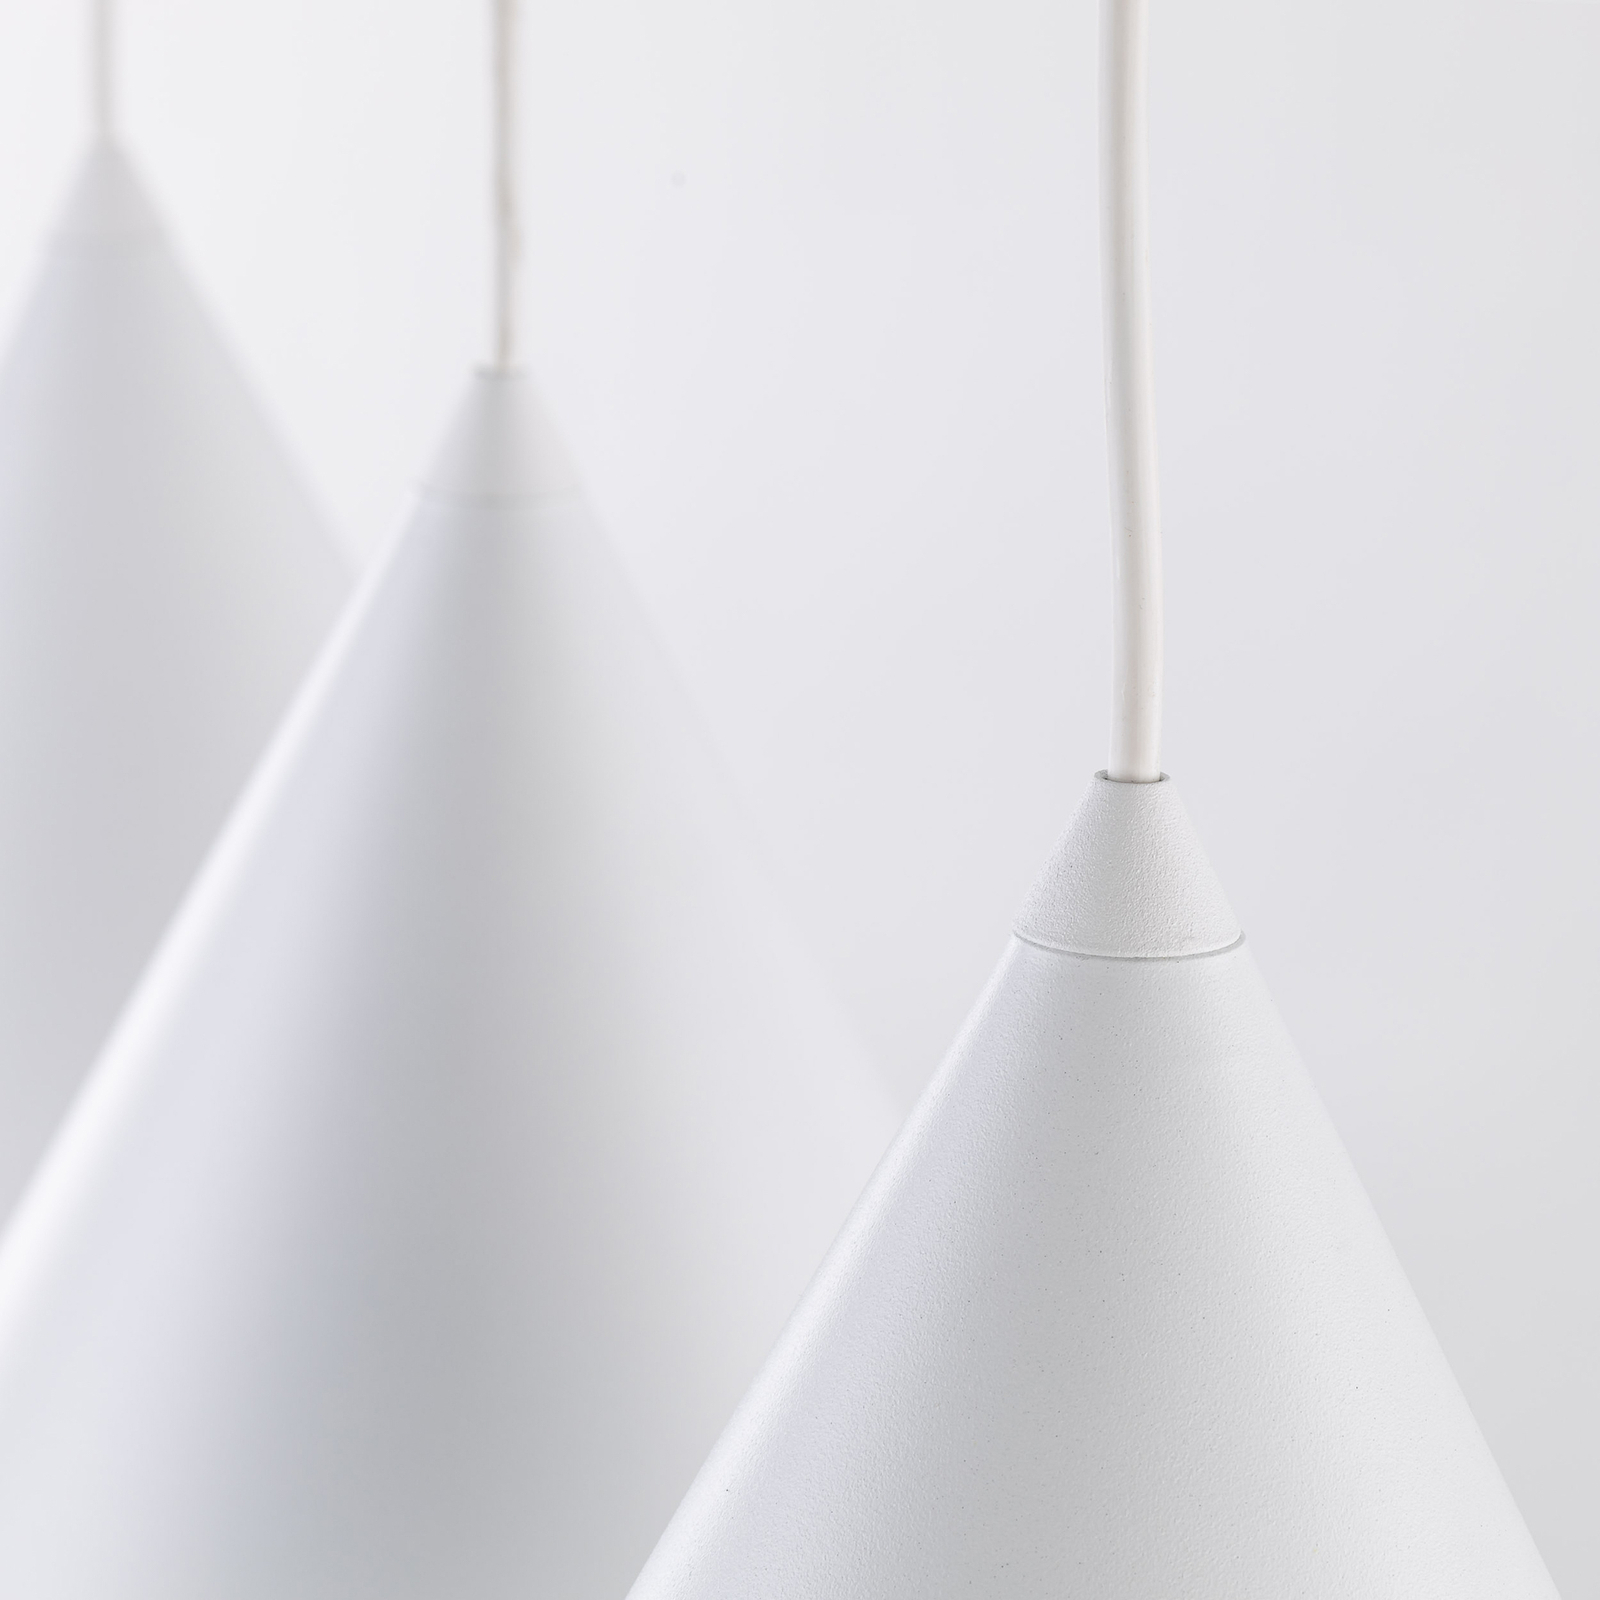 Hanglamp CONO, 3-lamps, Linear, lengte 75 cm, wit